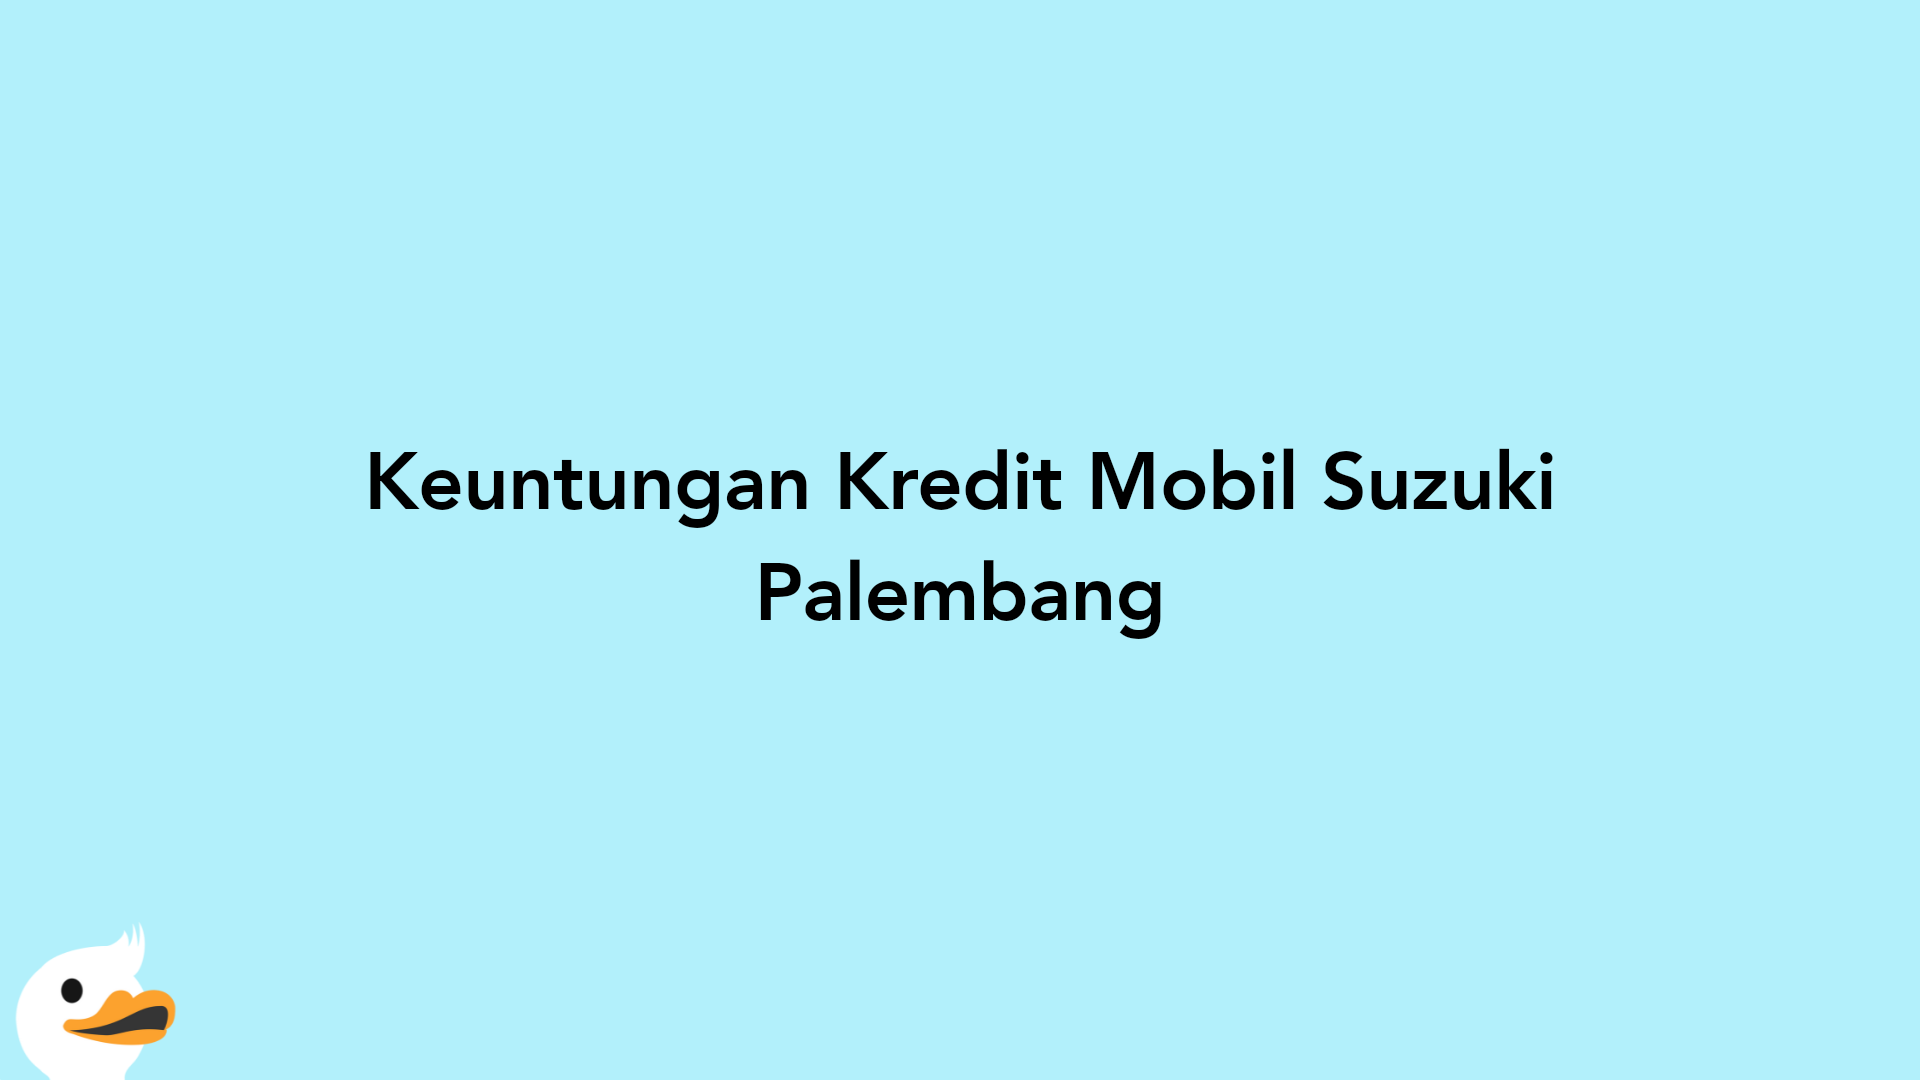 Keuntungan Kredit Mobil Suzuki Palembang